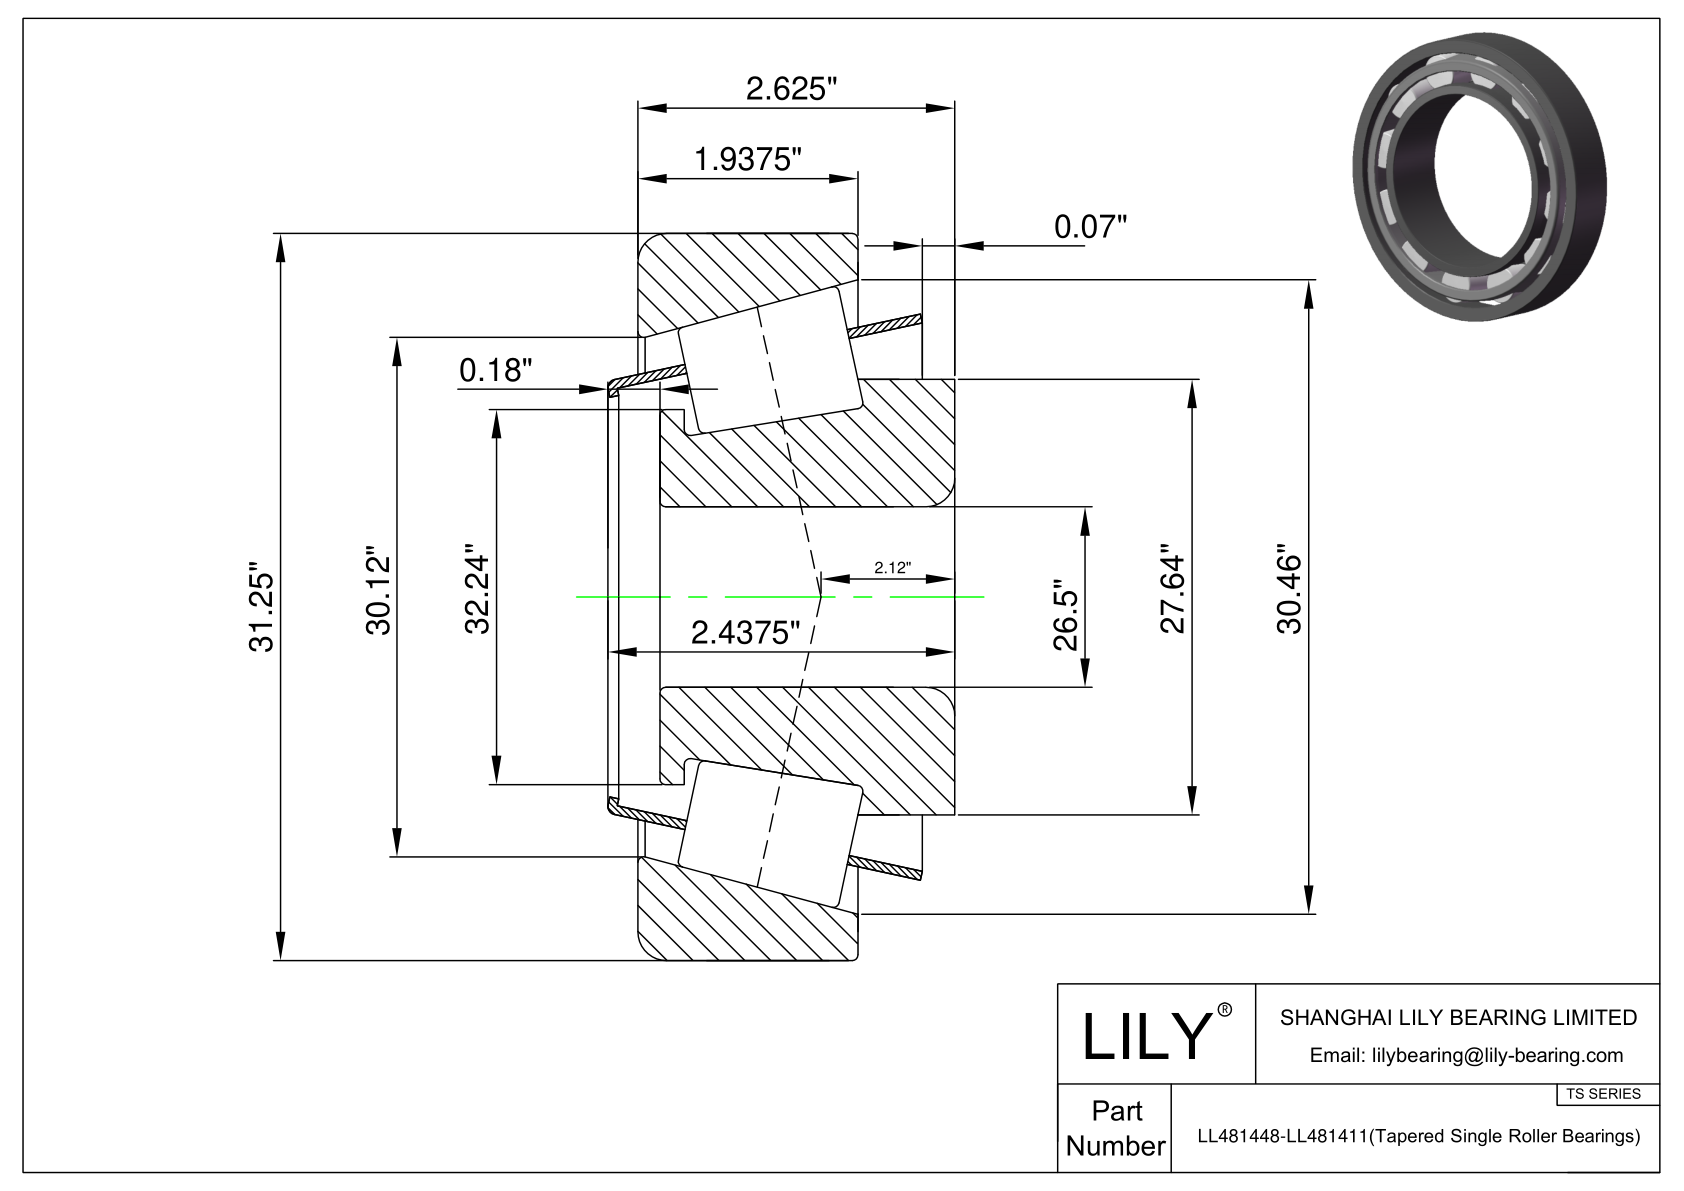 LL481448-LL481411 TS系列(圆锥单滚子轴承)(英制) CAD图形